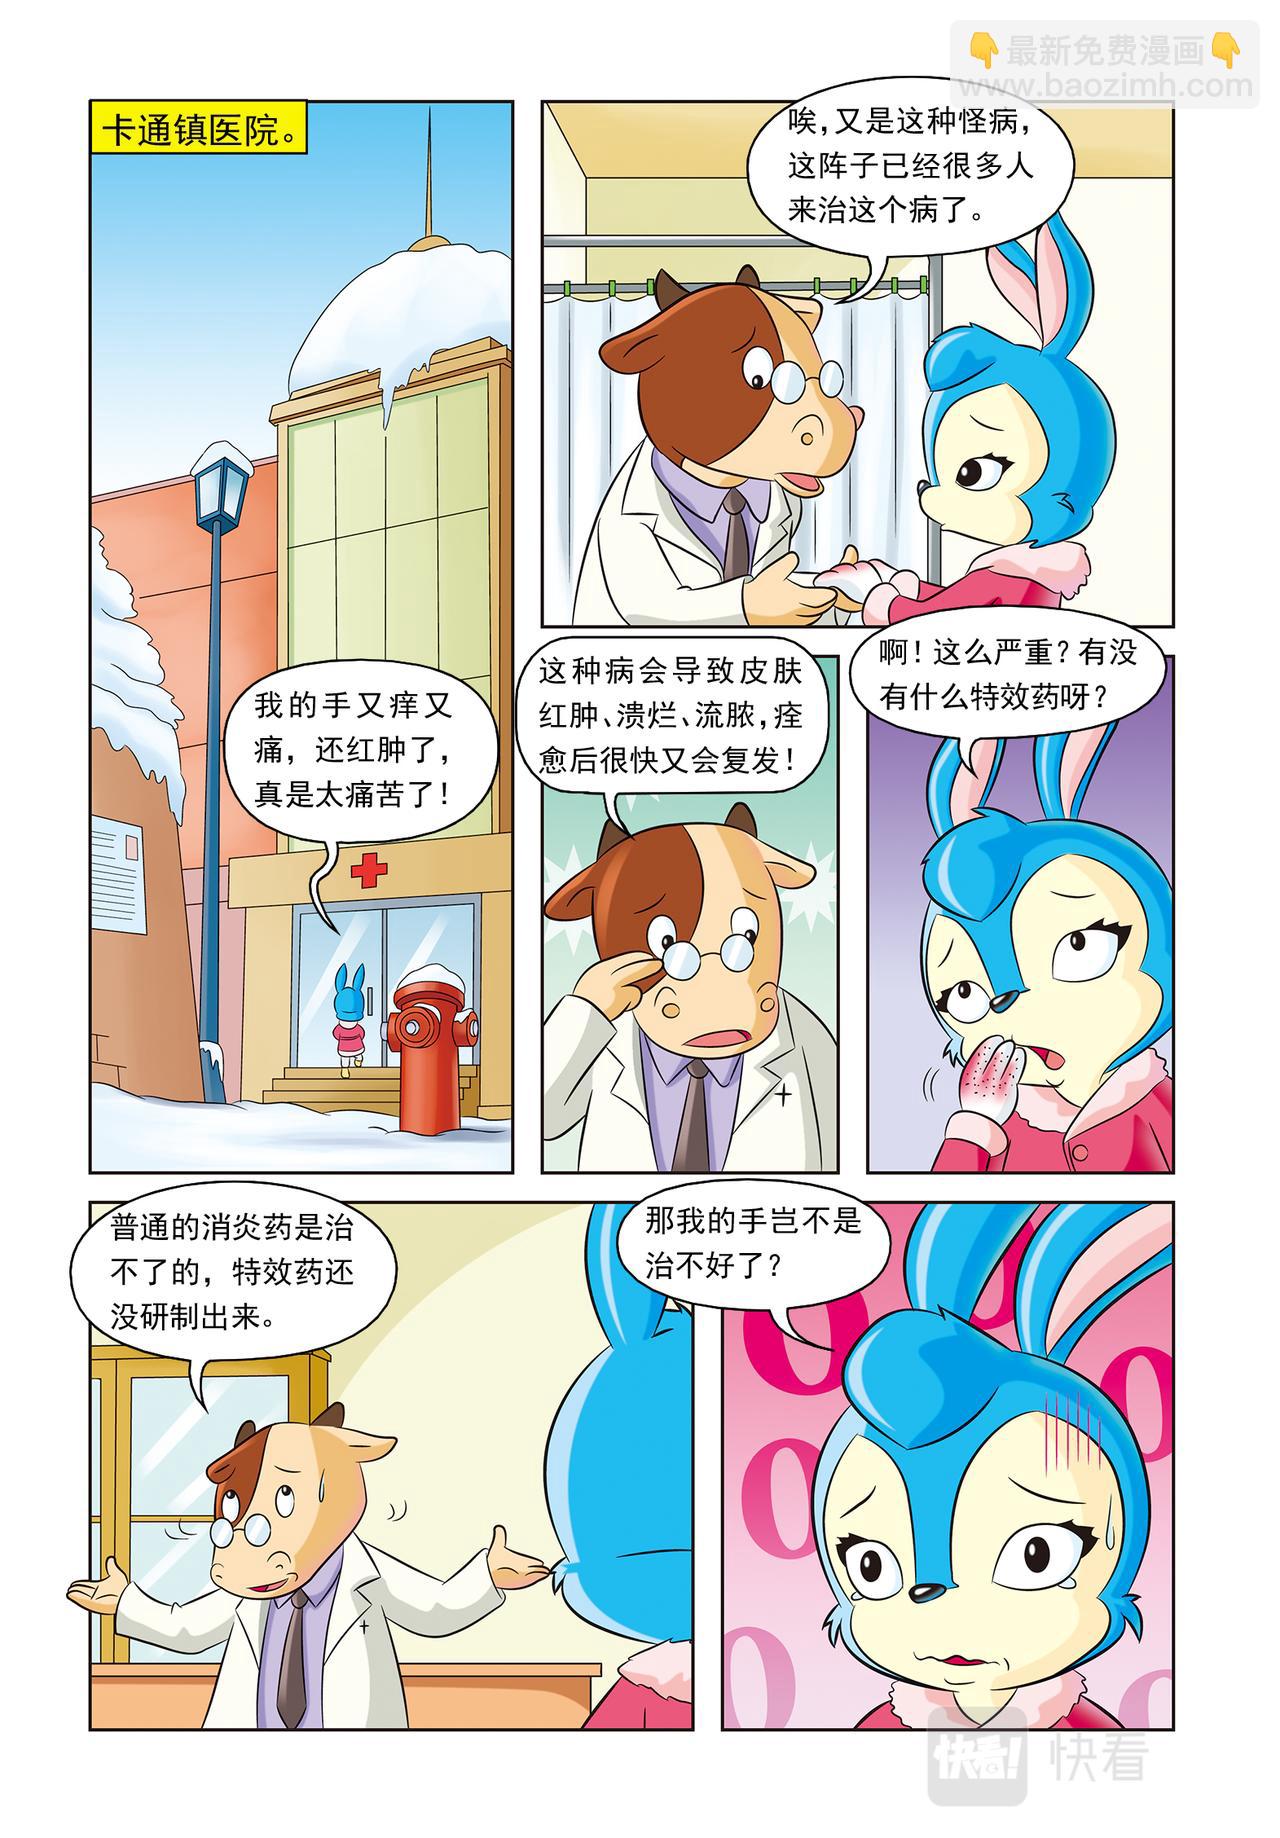 虹猫蓝兔惊险探案系列 - 第十七话神秘绑架案 - 2